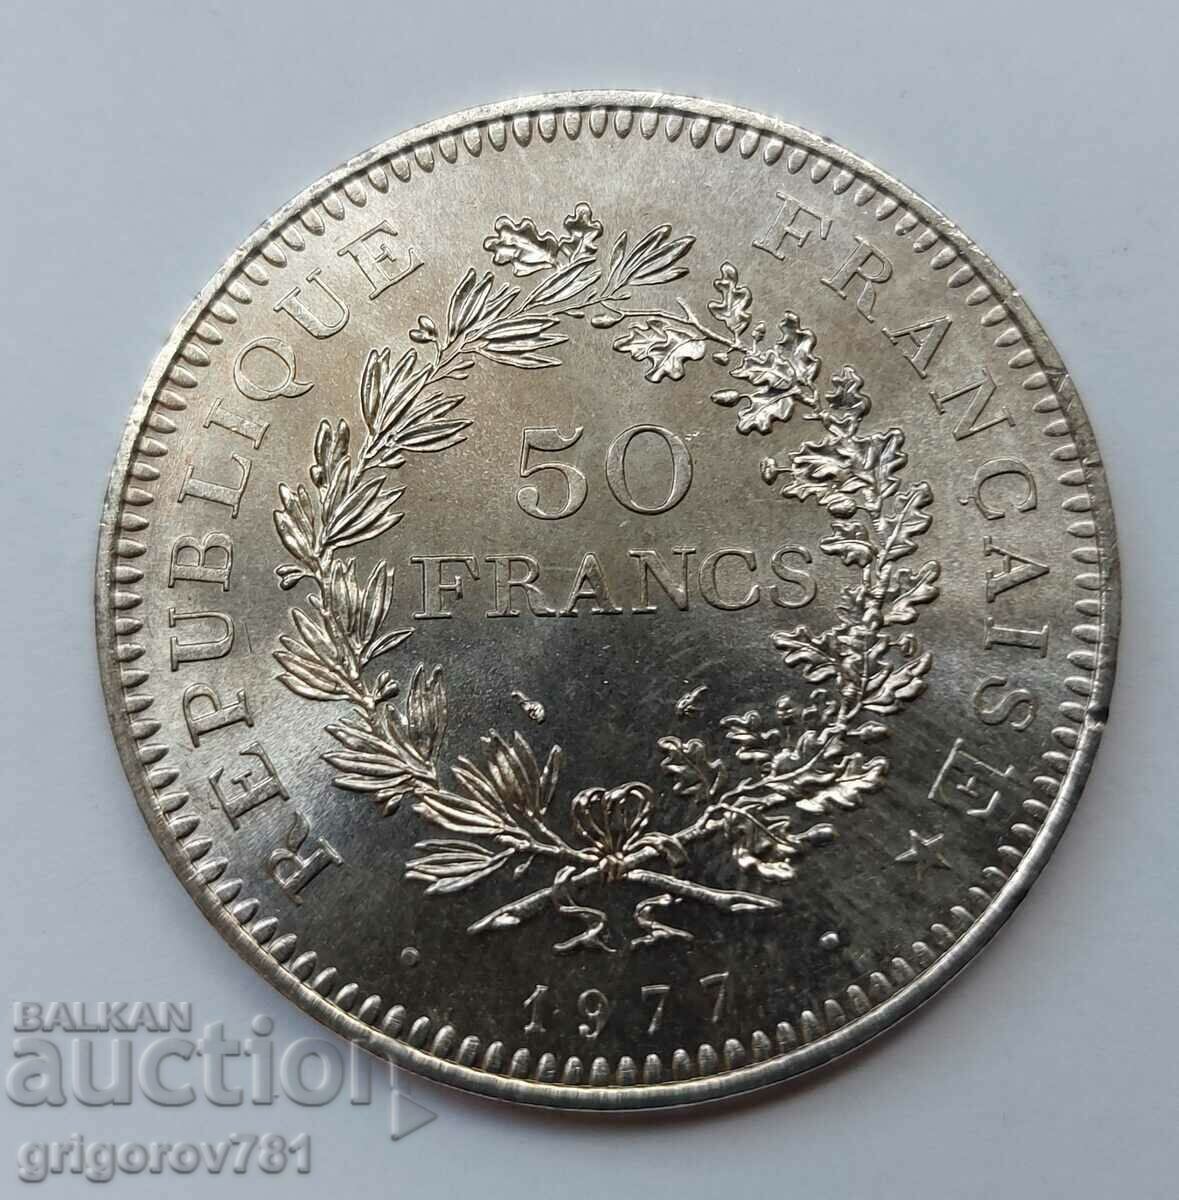 50 Φράγκα Ασήμι Γαλλία 1977 - Ασημένιο νόμισμα #47